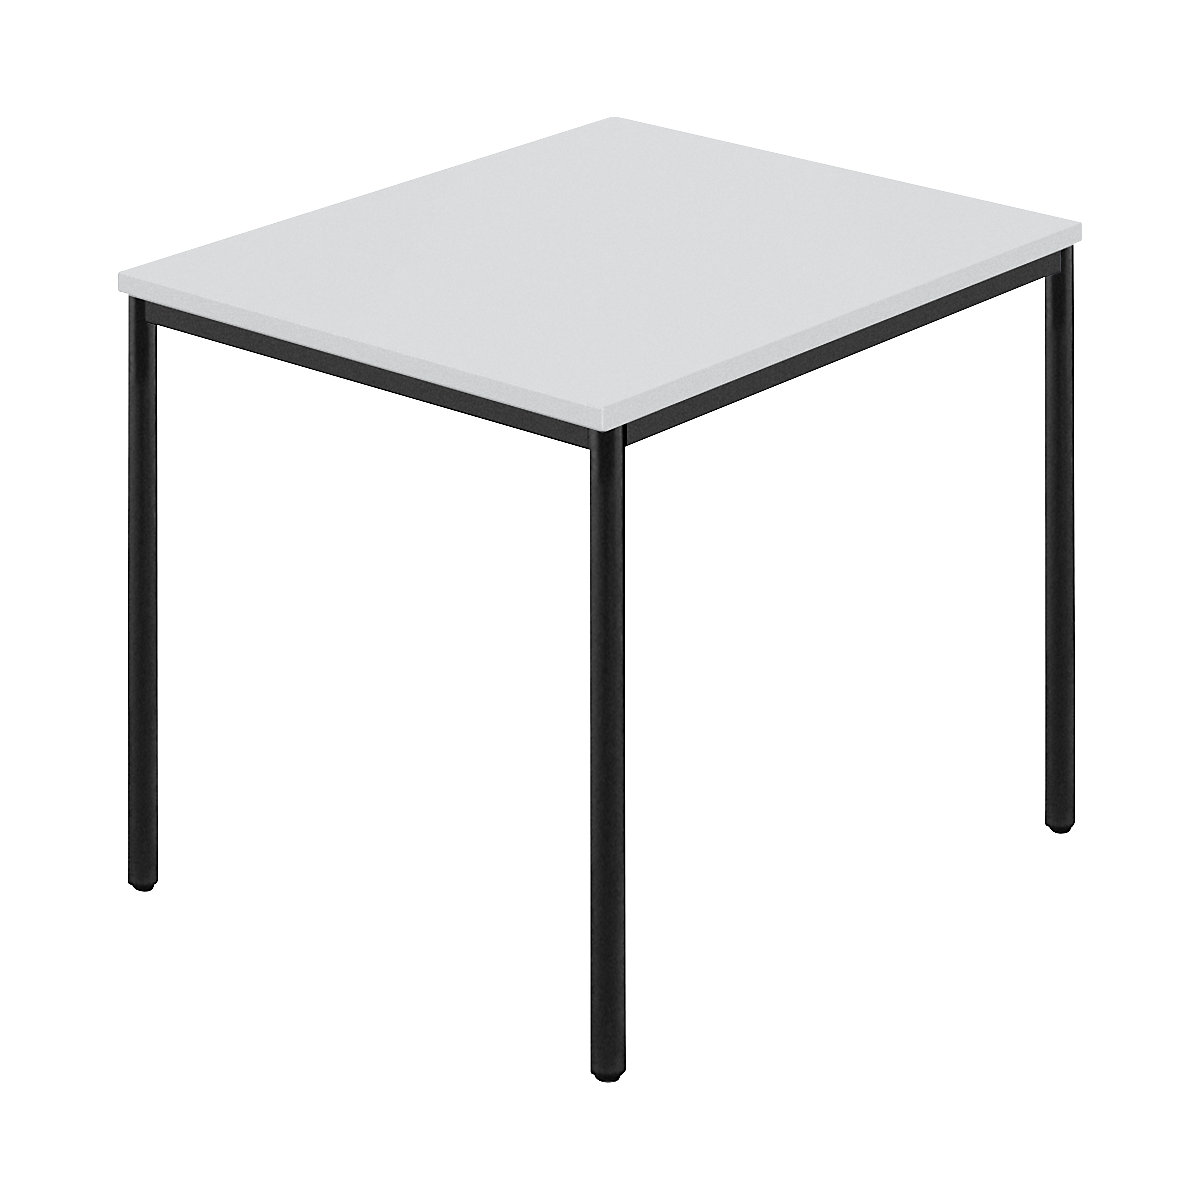 Pravokotna miza, okrogla cev s premazom